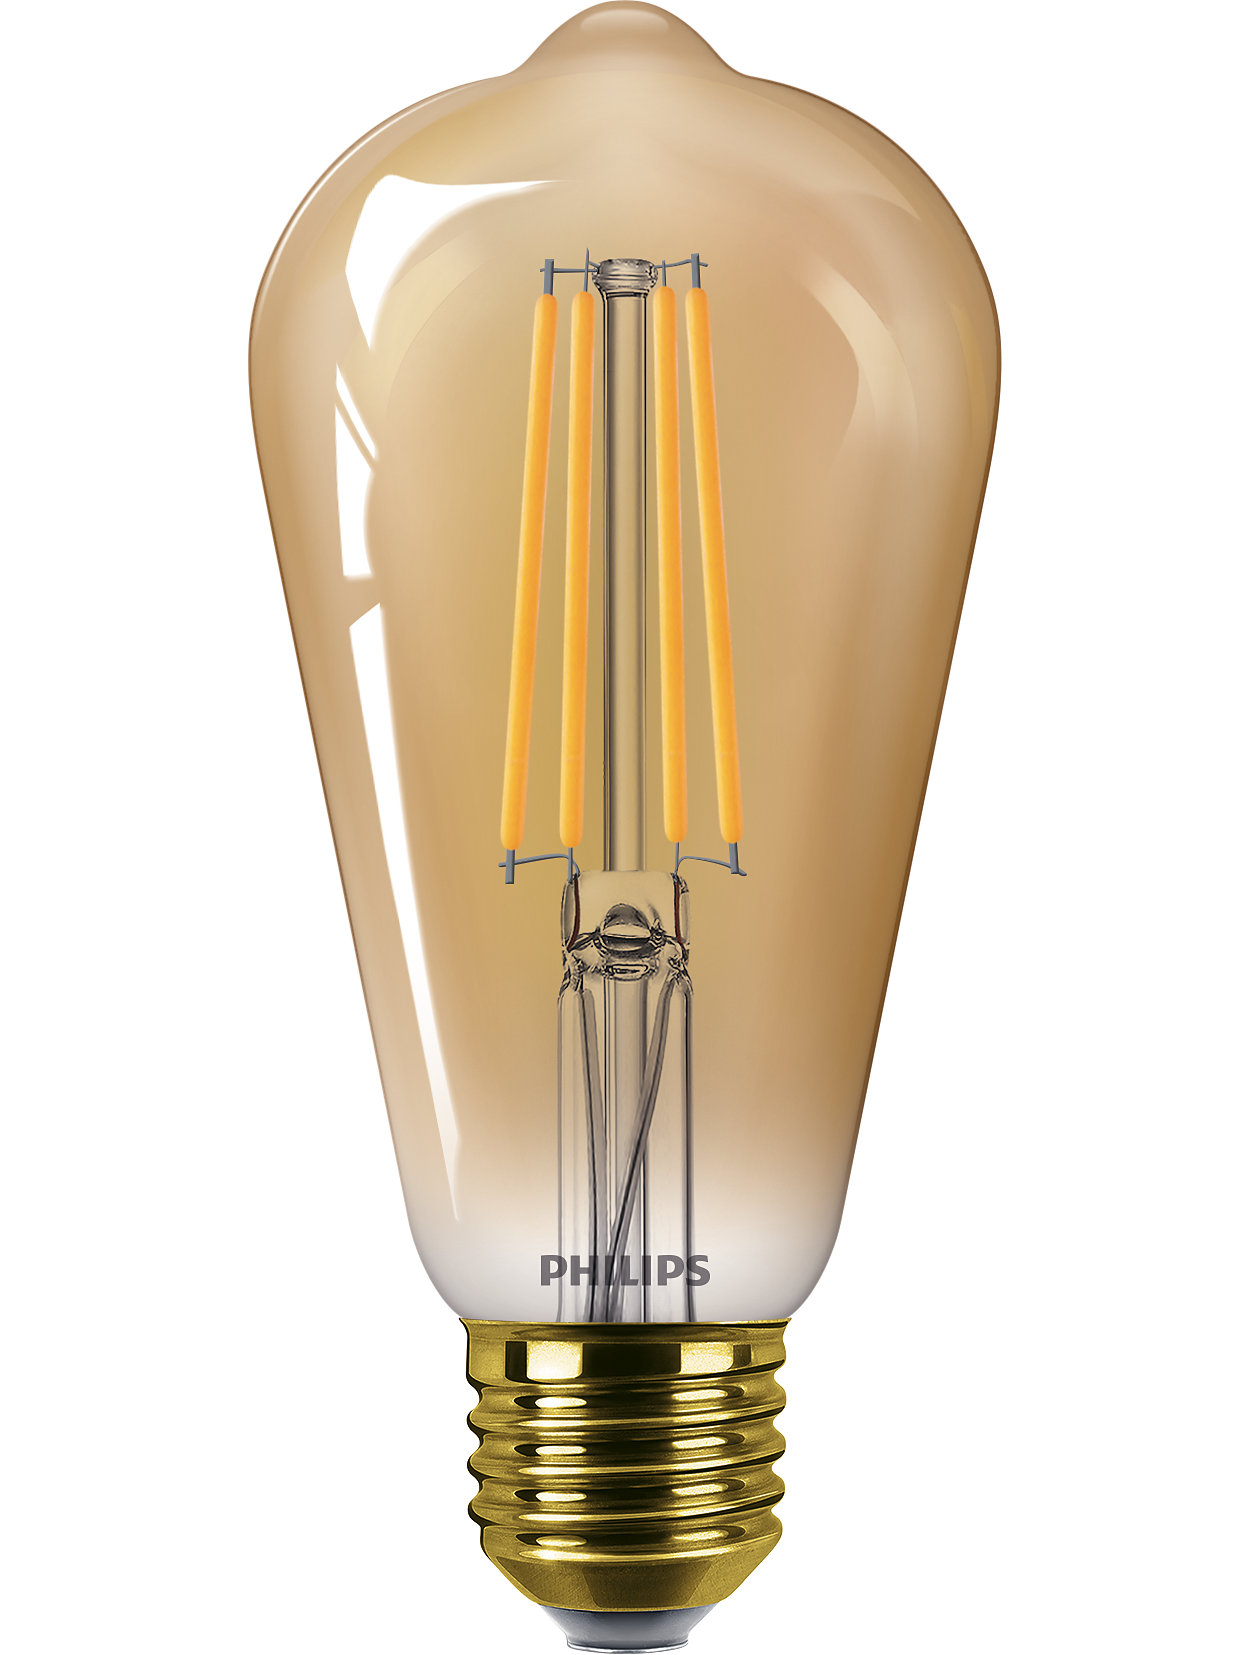 Λαμπτήρας φωτισμού LED κορυφαίας τεχνολογίας για το σπίτι